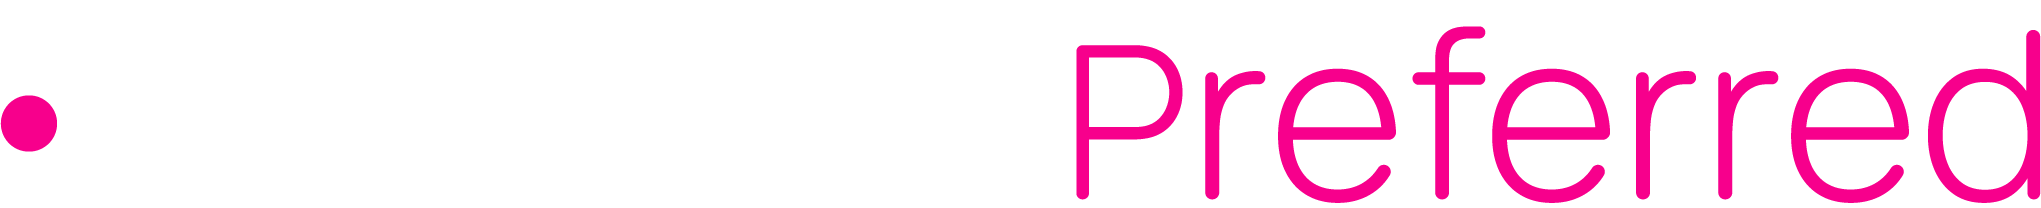 isolved Preferred Logo